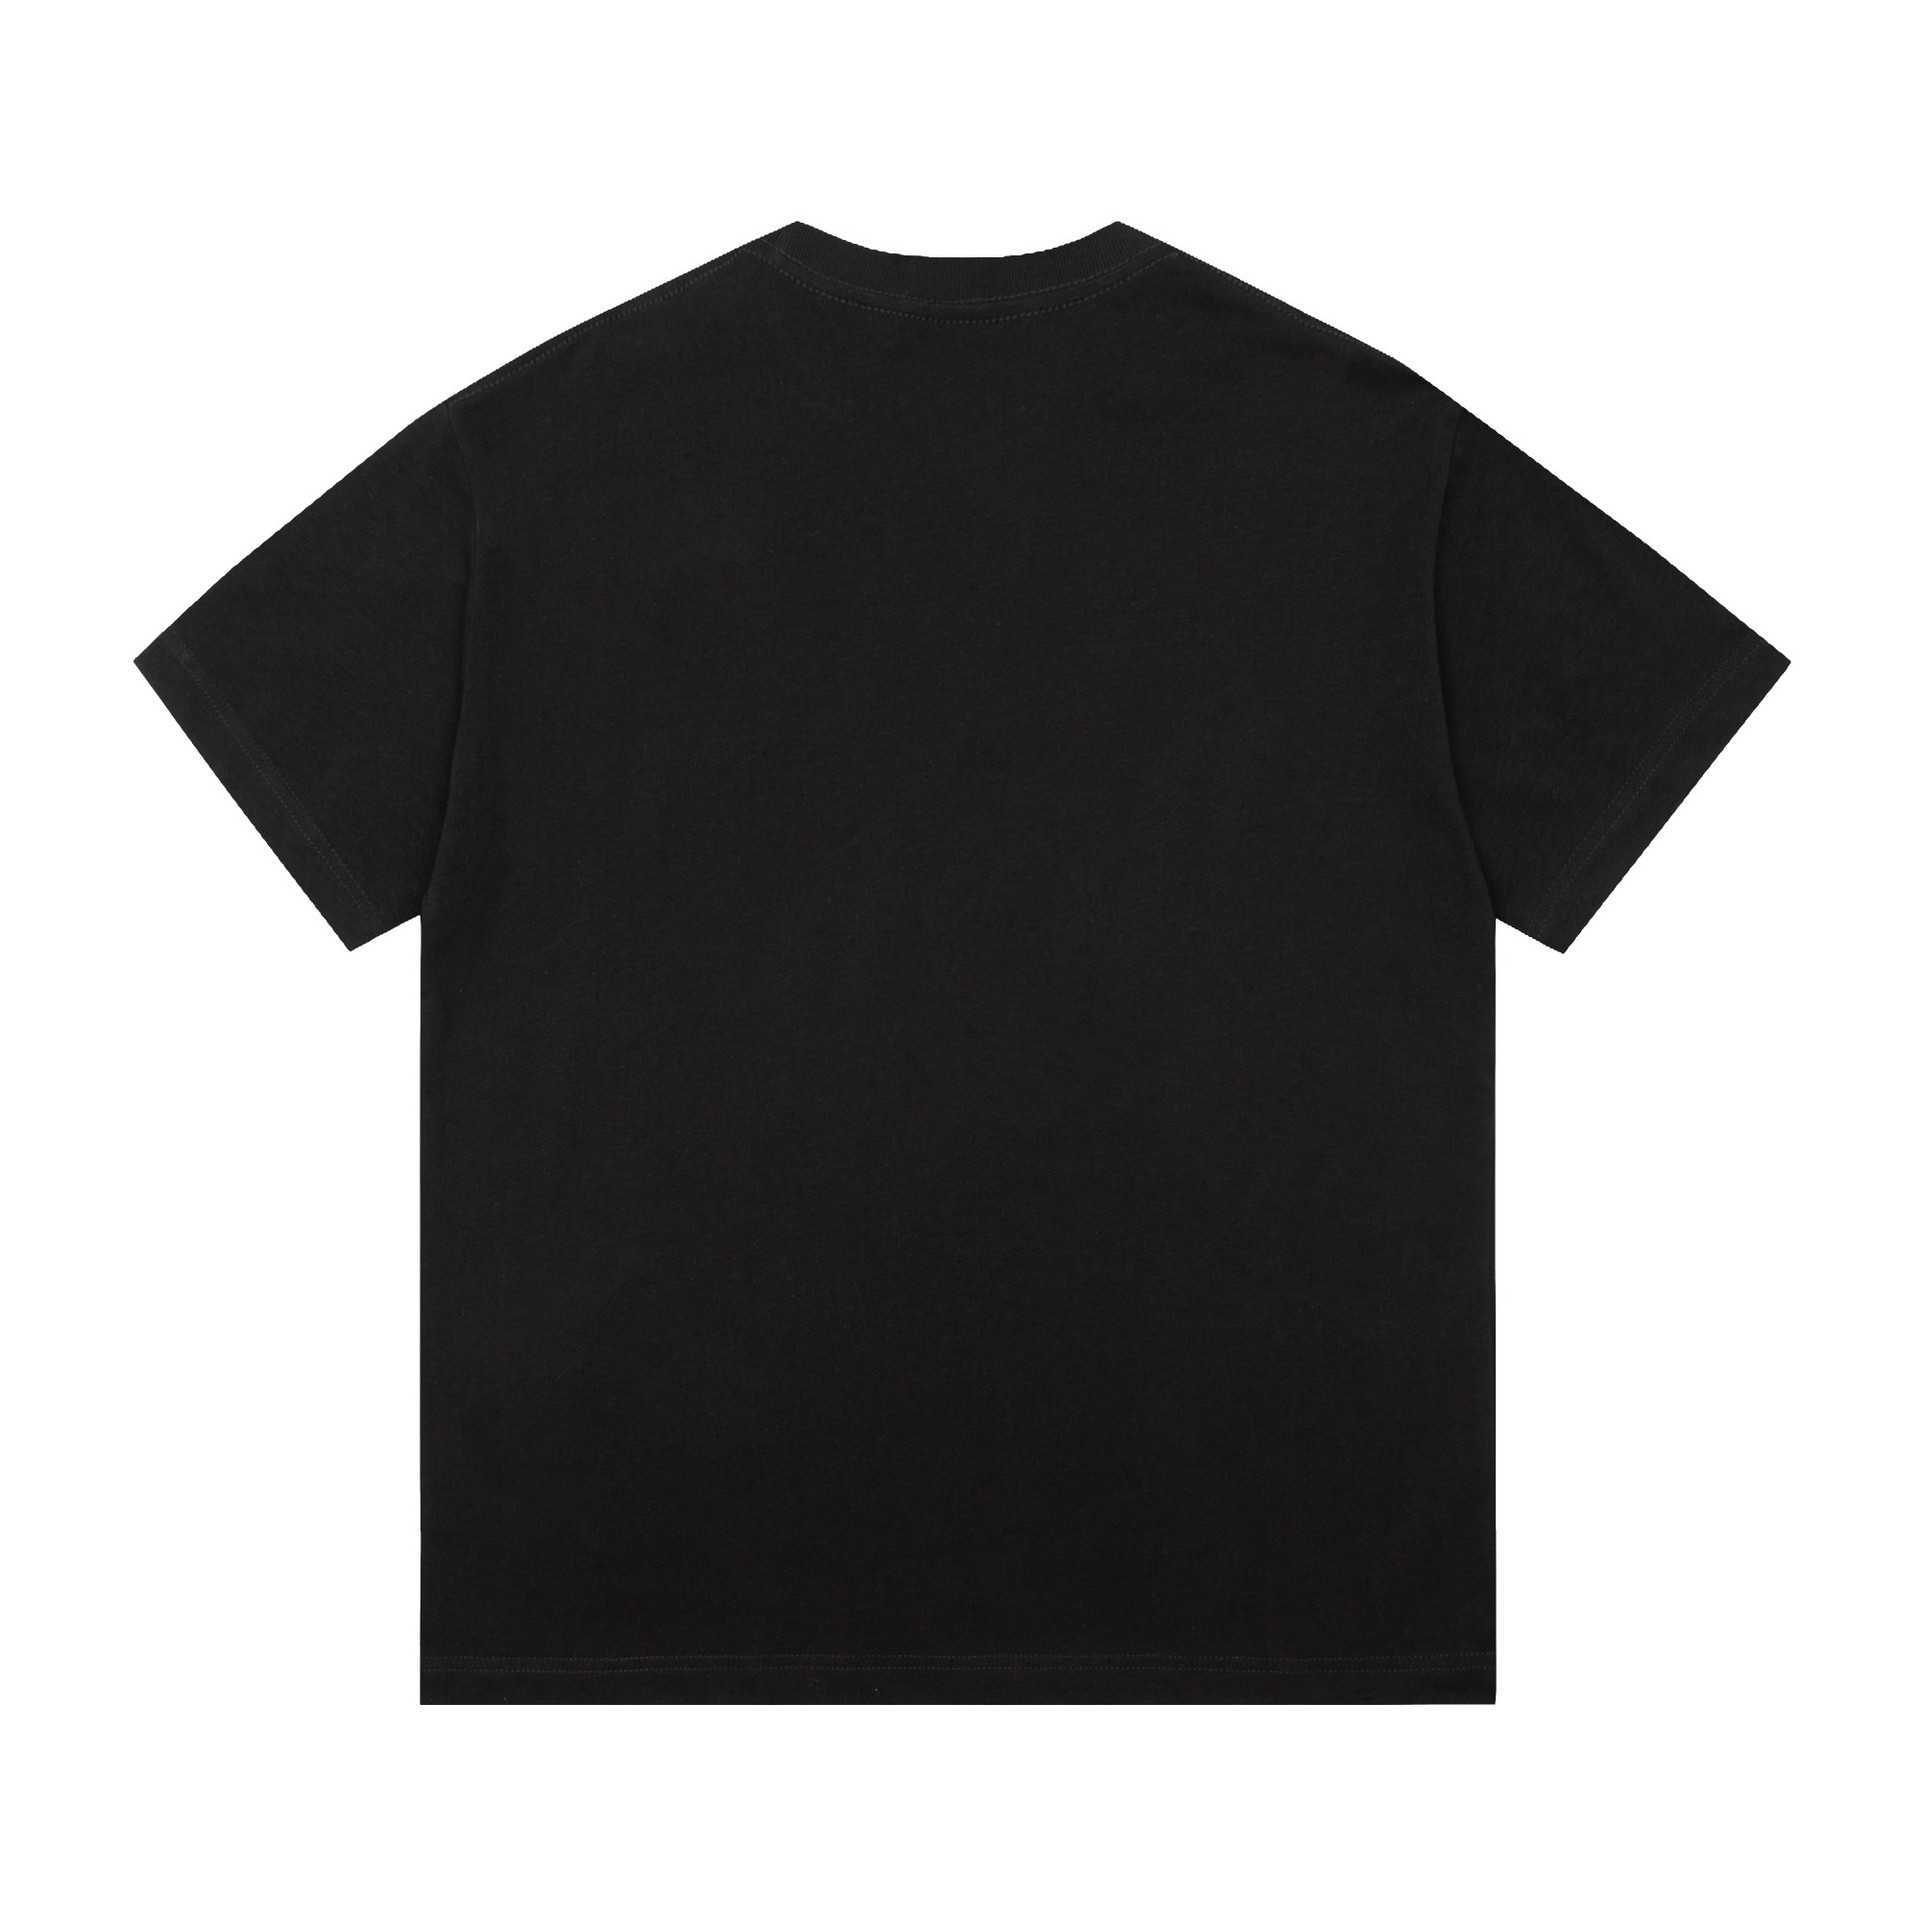 Designer nouvelles femmes t-shirt Version correcte classique basique solide petite lettre impression OS T-shirt à manches lâches